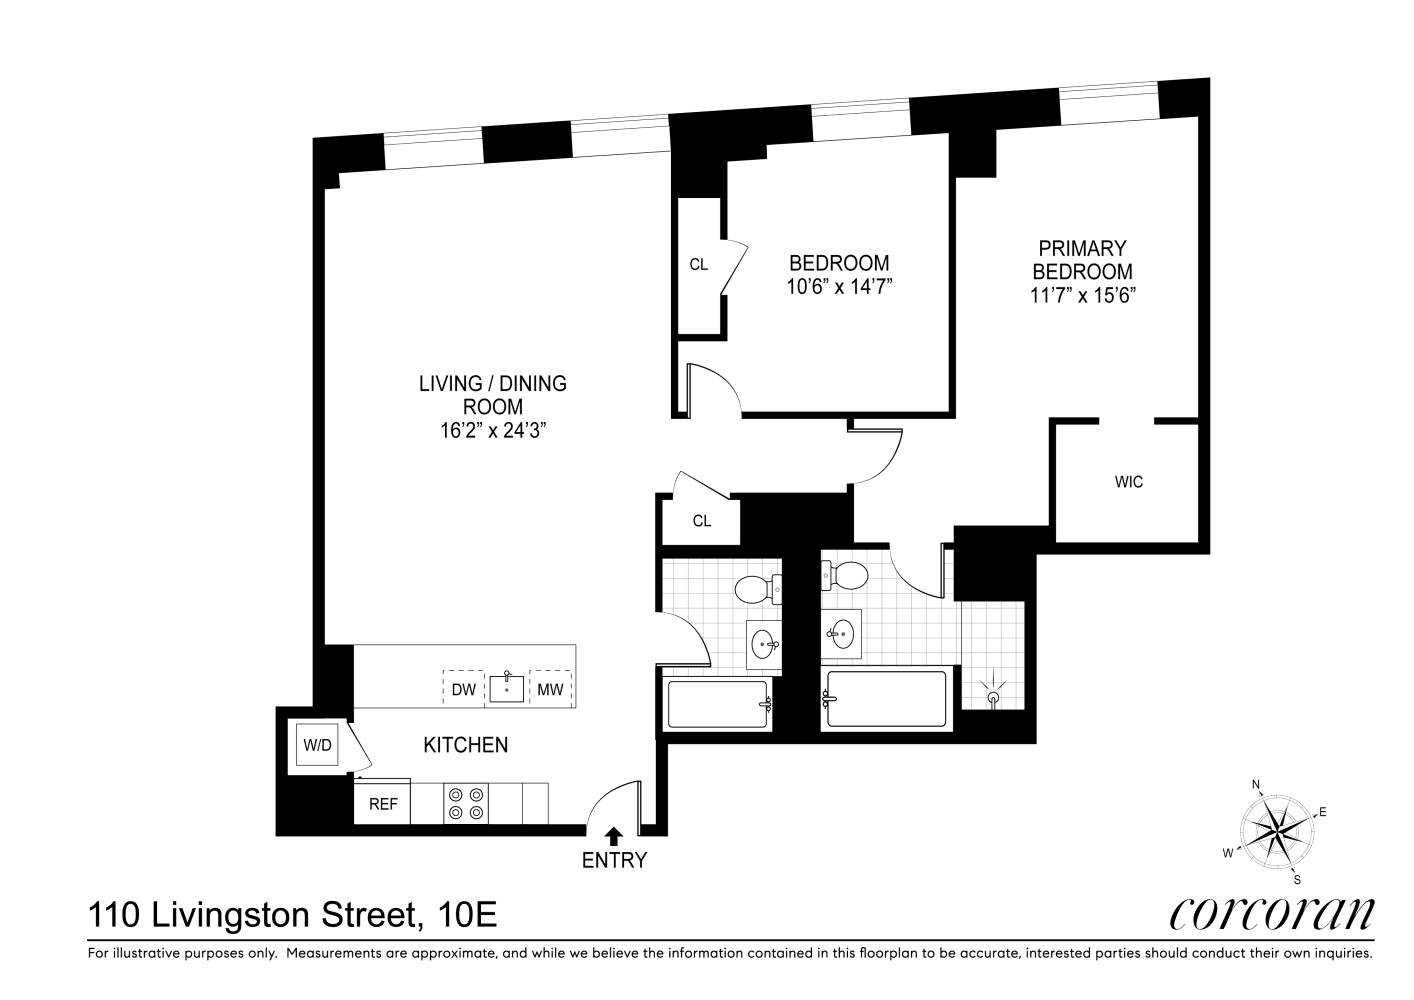 Floorplan for 110 Livingston Street, 10E